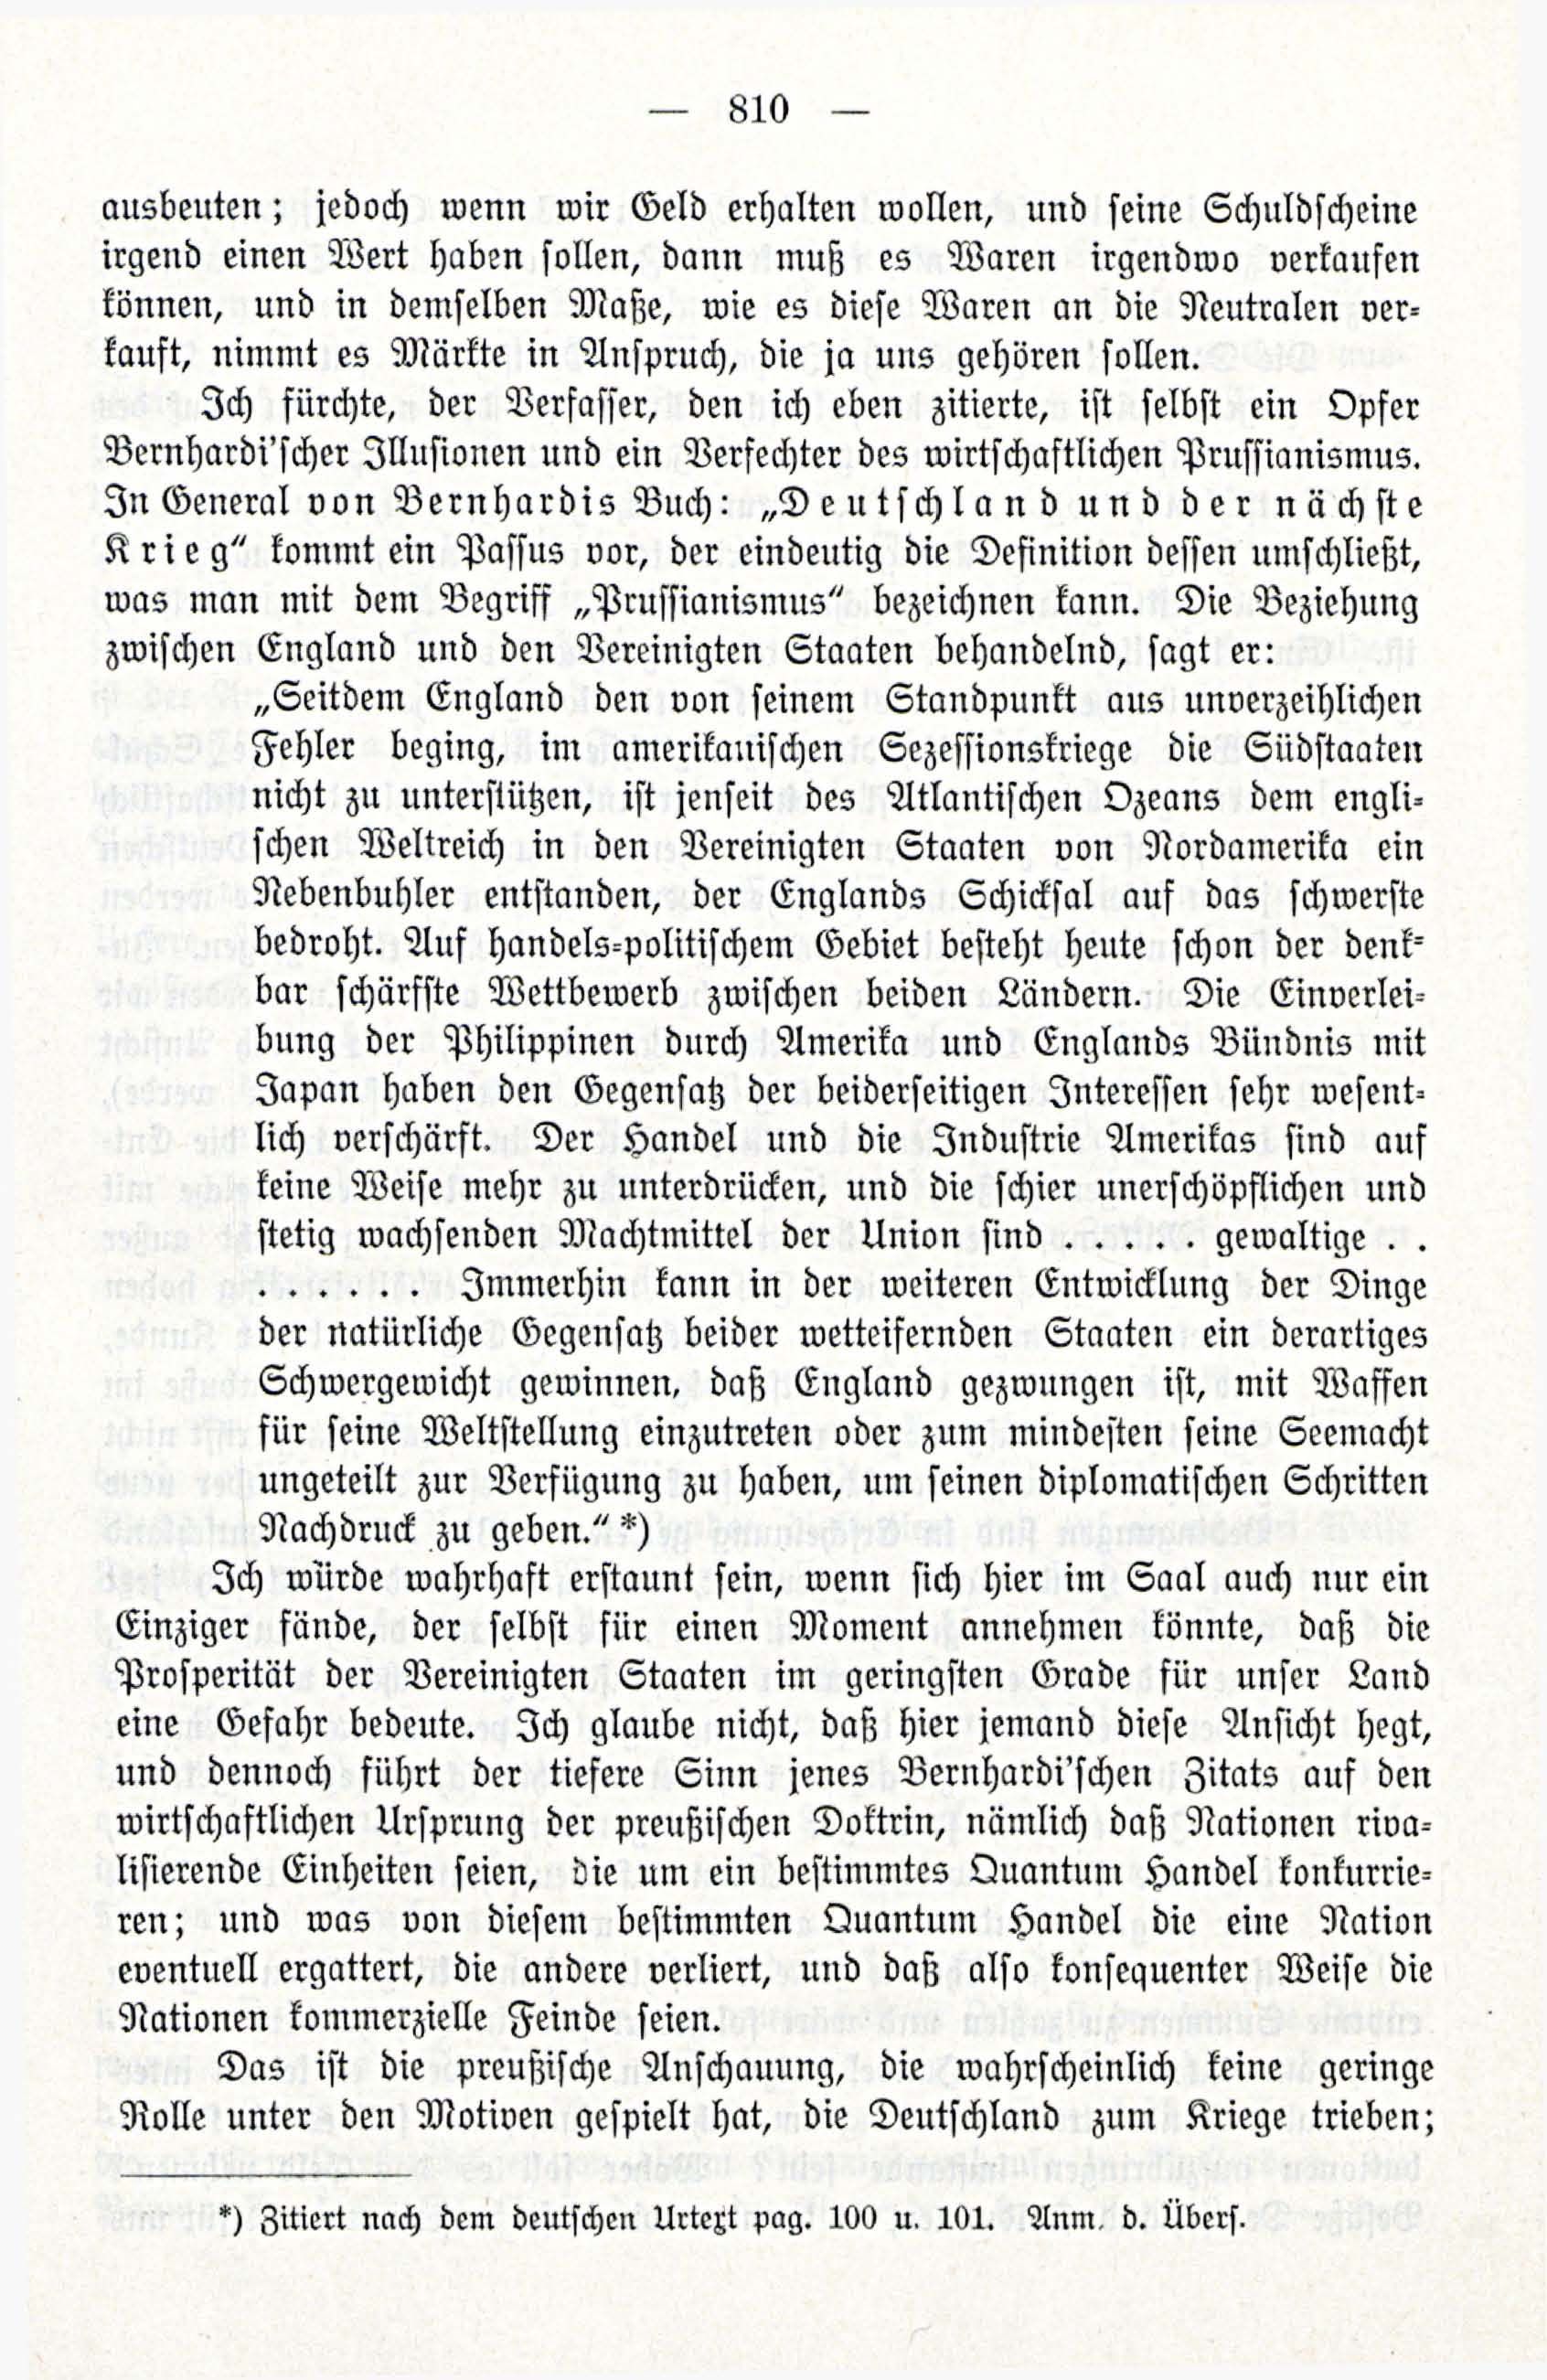 Deutsche Monatsschrift für Russland [3/12] (1914) | 26. (810) Main body of text